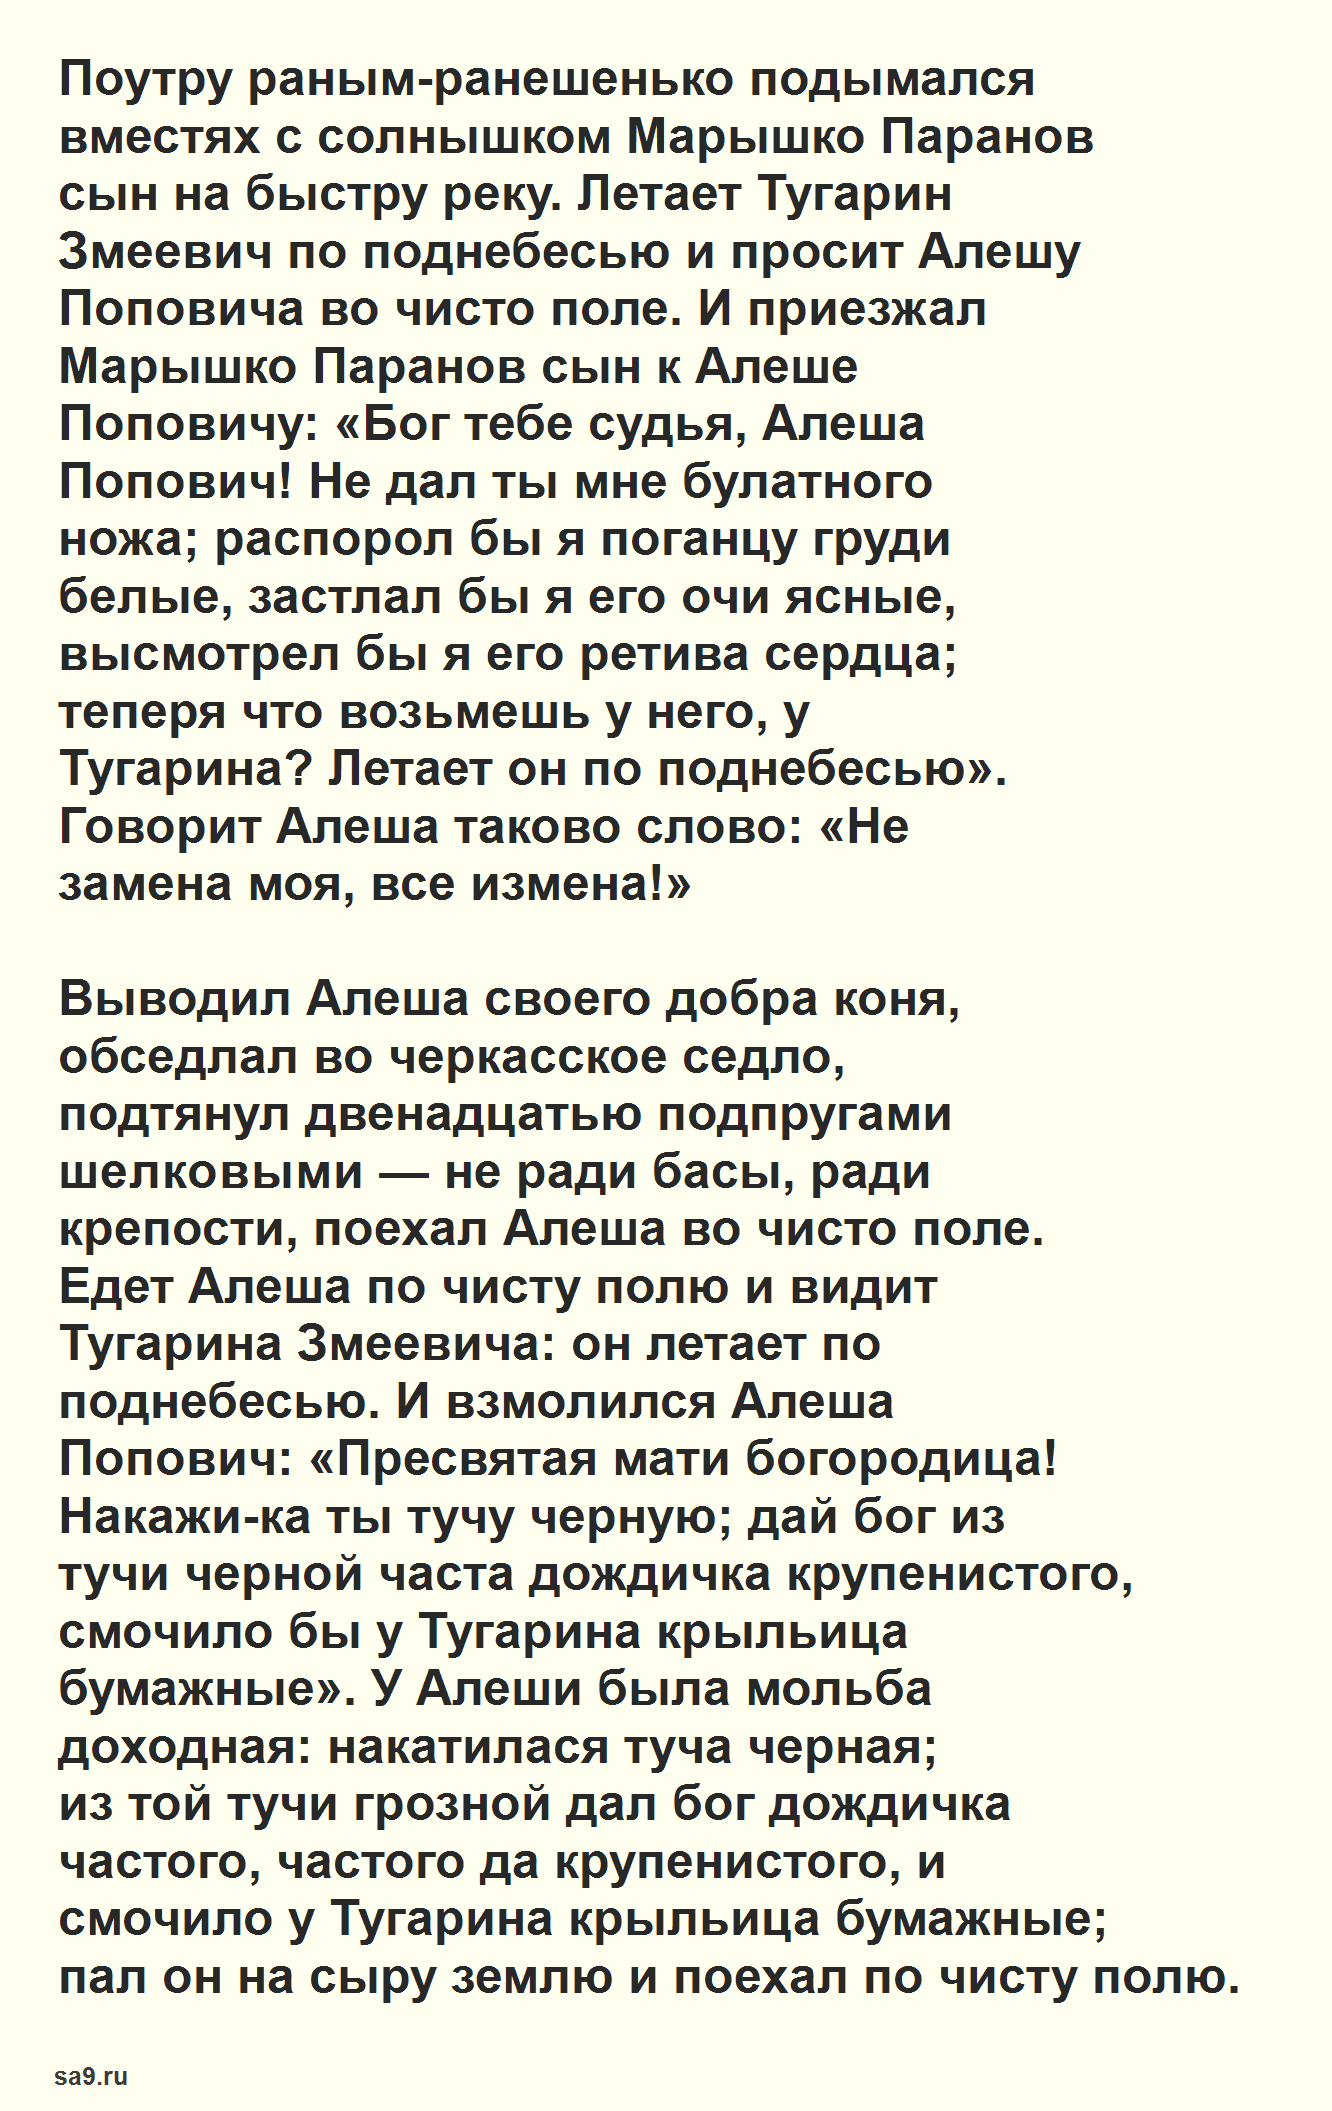 Алеша Попович - русская народная сказка